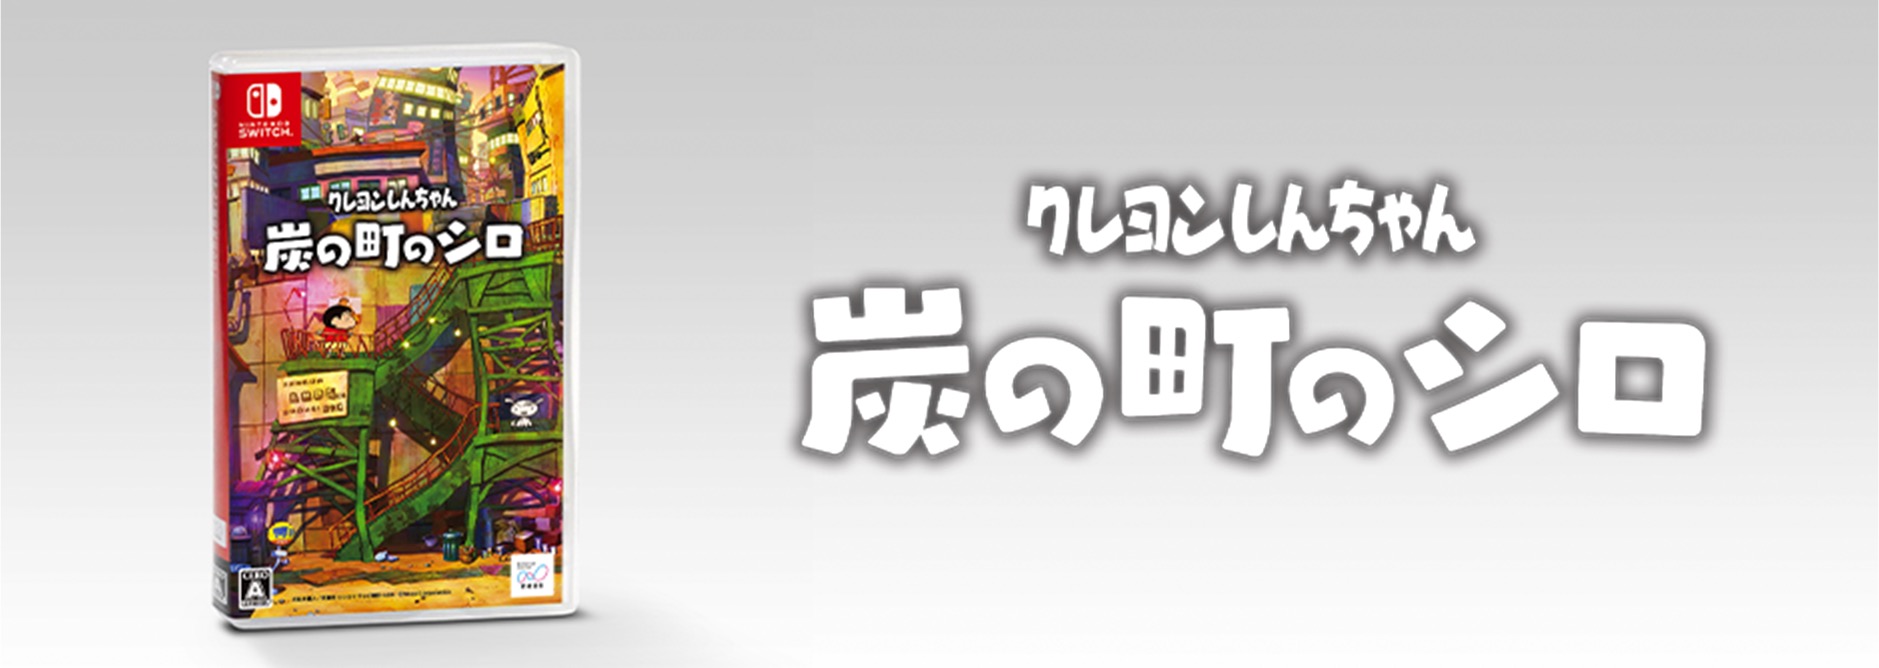 Nintendo Switch™ ゲームソフト クレヨンしんちゃん「炭の町のシロ」抽選で10名様